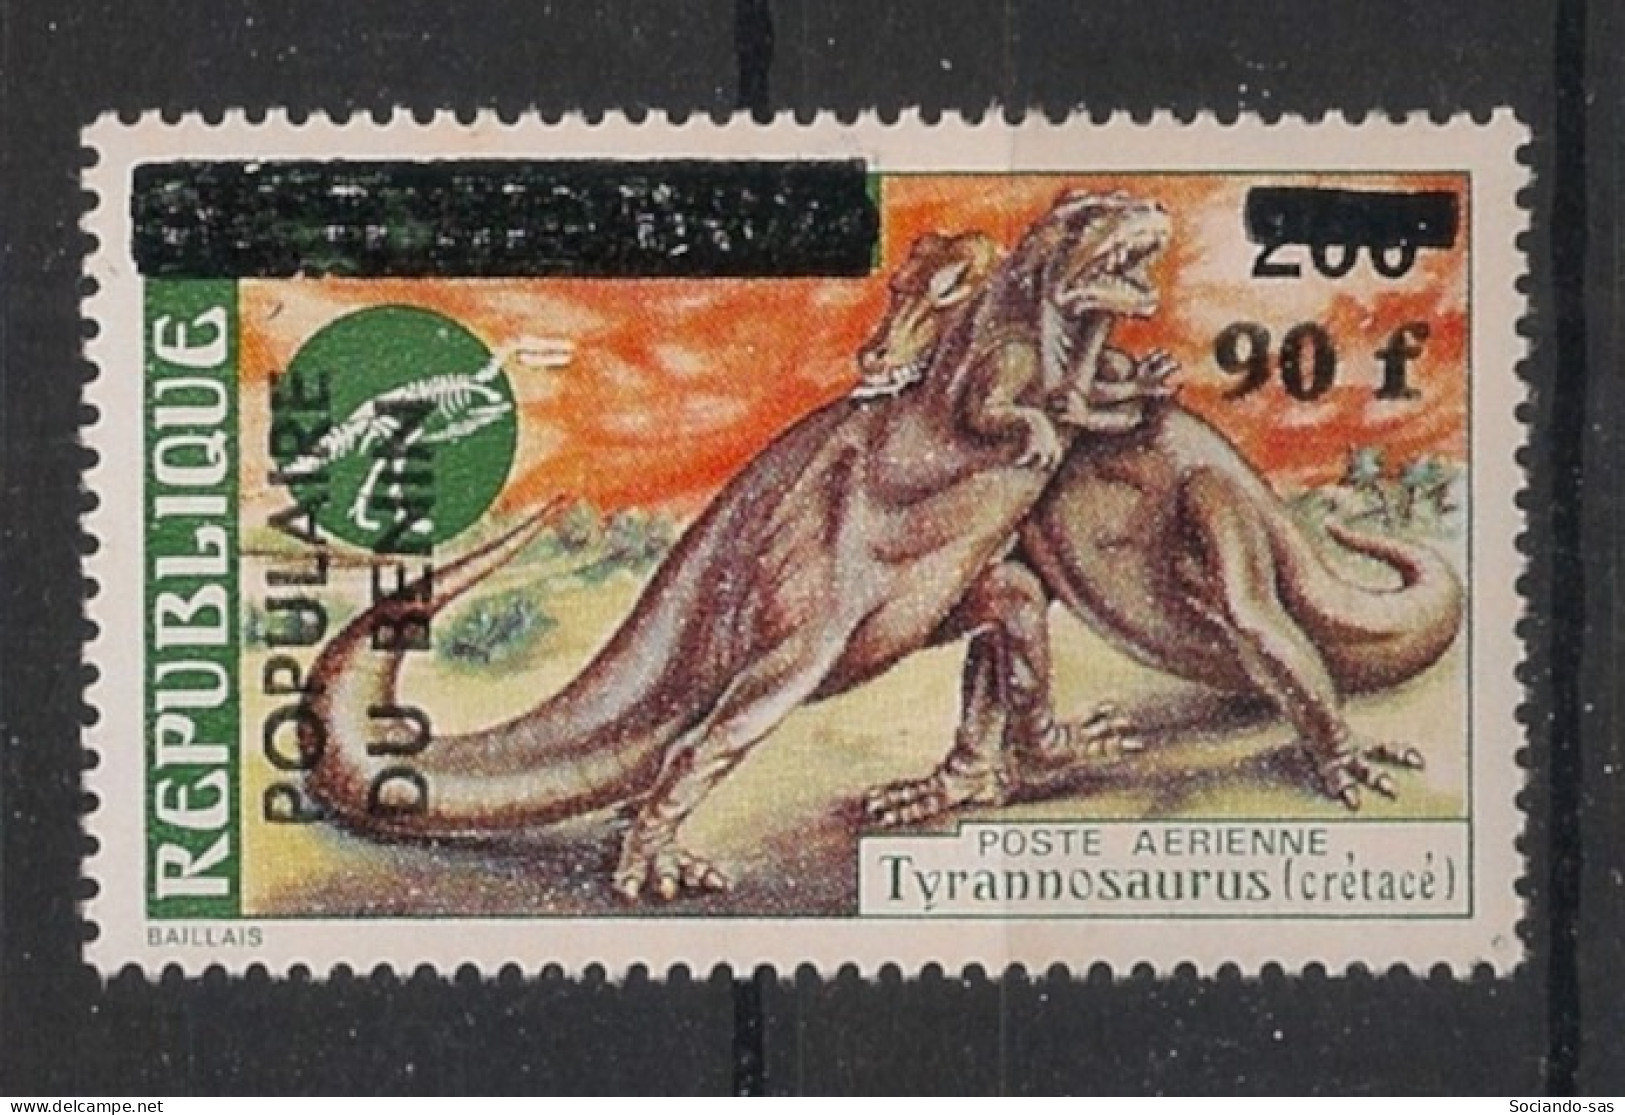 BENIN - 1985 - N°Mi. 414 - Dinosaure 90F / 200F - Neuf Luxe ** / MNH / Postfrisch - Benin – Dahomey (1960-...)